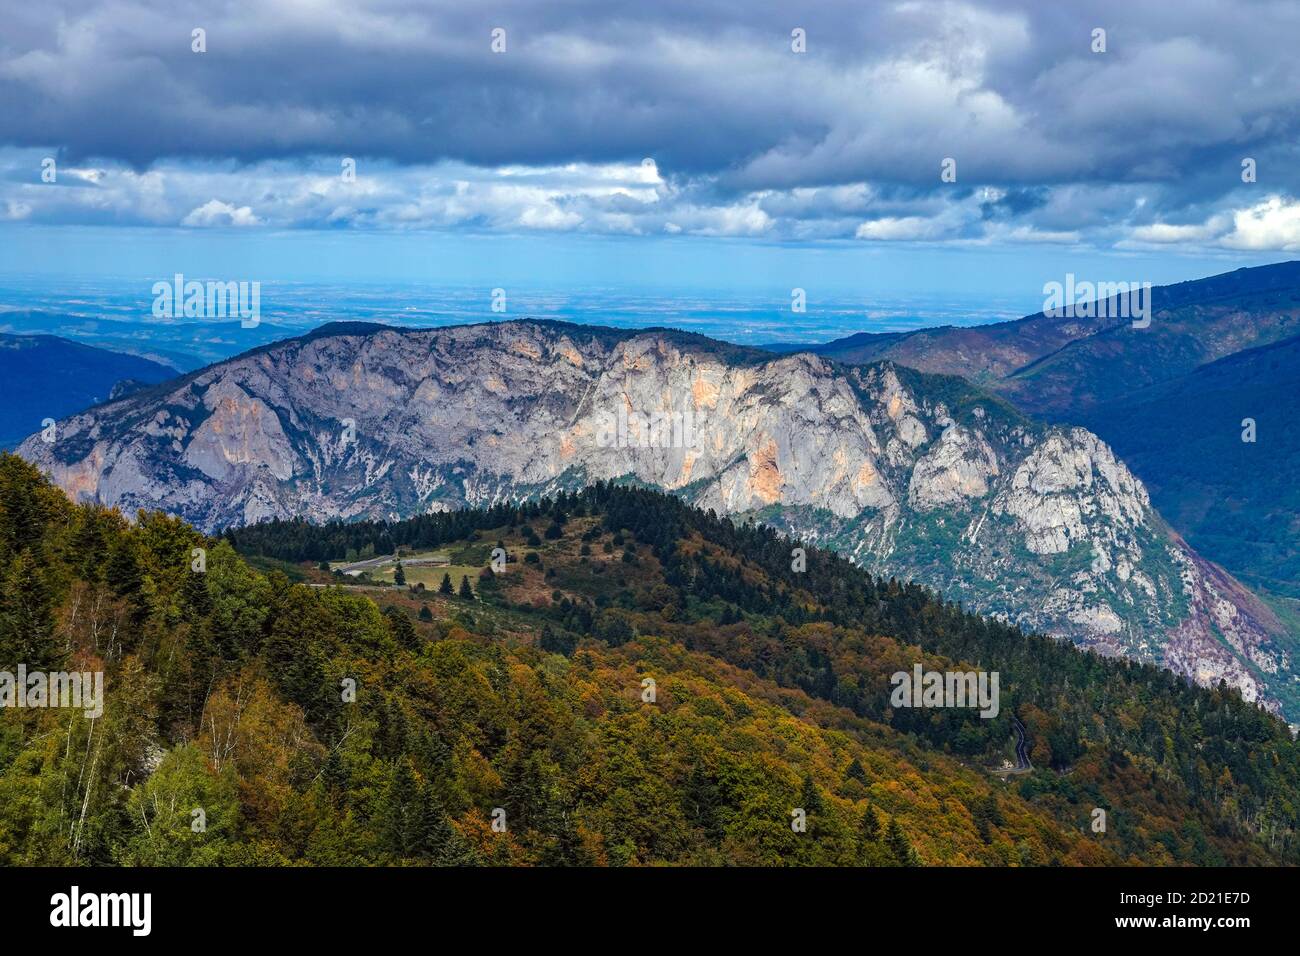 La montagne rocheuse de Sinsat vue du plateau de Beille, domaine skiable nordique, les Cabannes, Ariège, France Banque D'Images